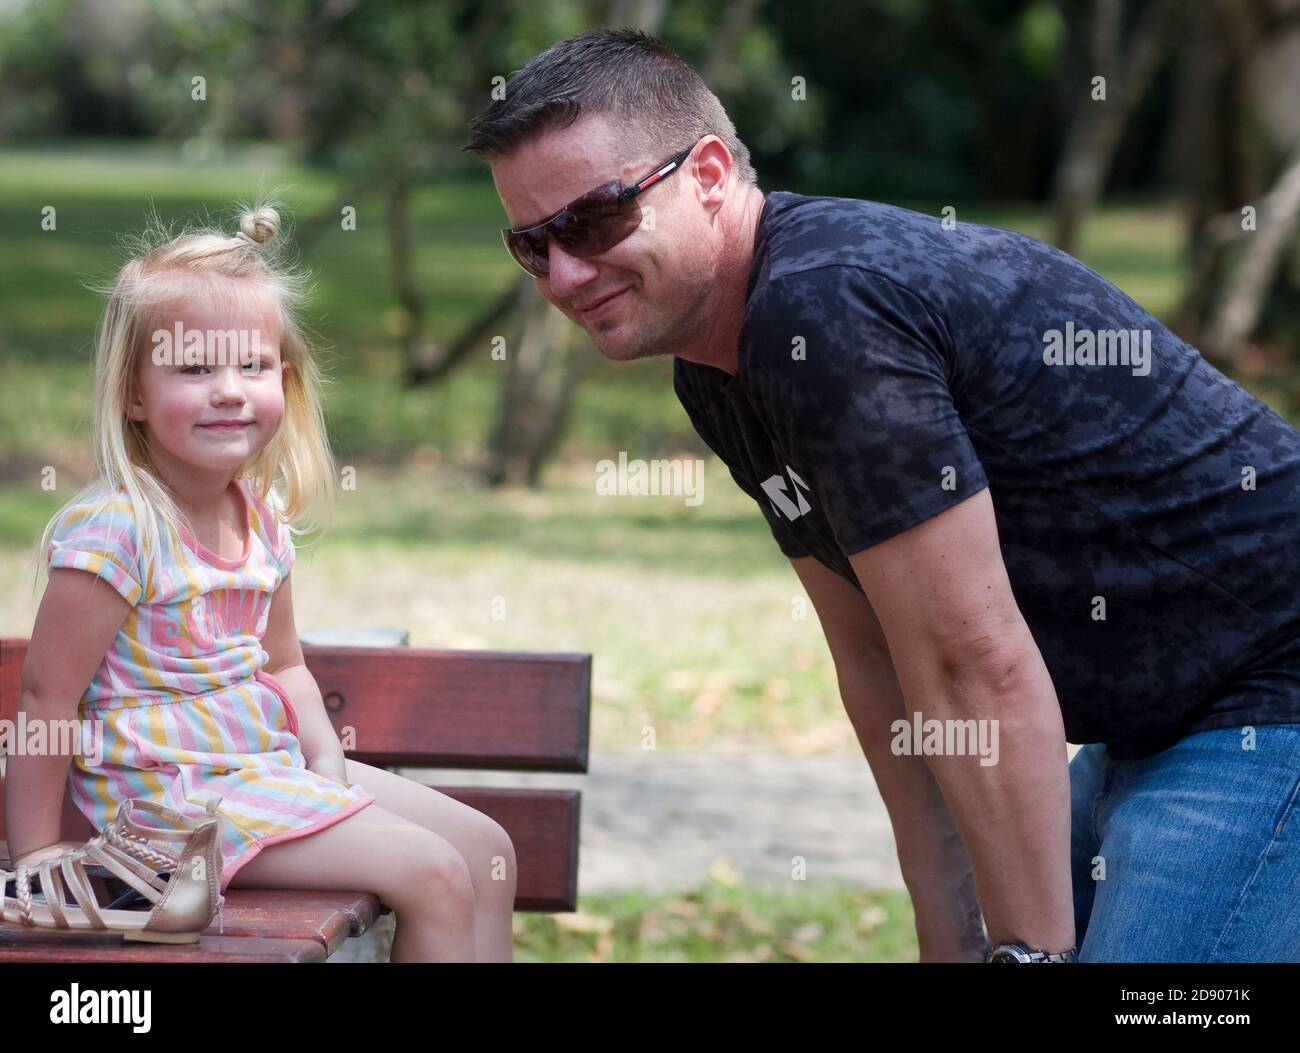 Auf einem Ausflug in den Park lächelt eine Tochter die Kamera an, während ihr Vater sie stolz anlächelt und sich auf ihr Niveau hockend. Stockfoto